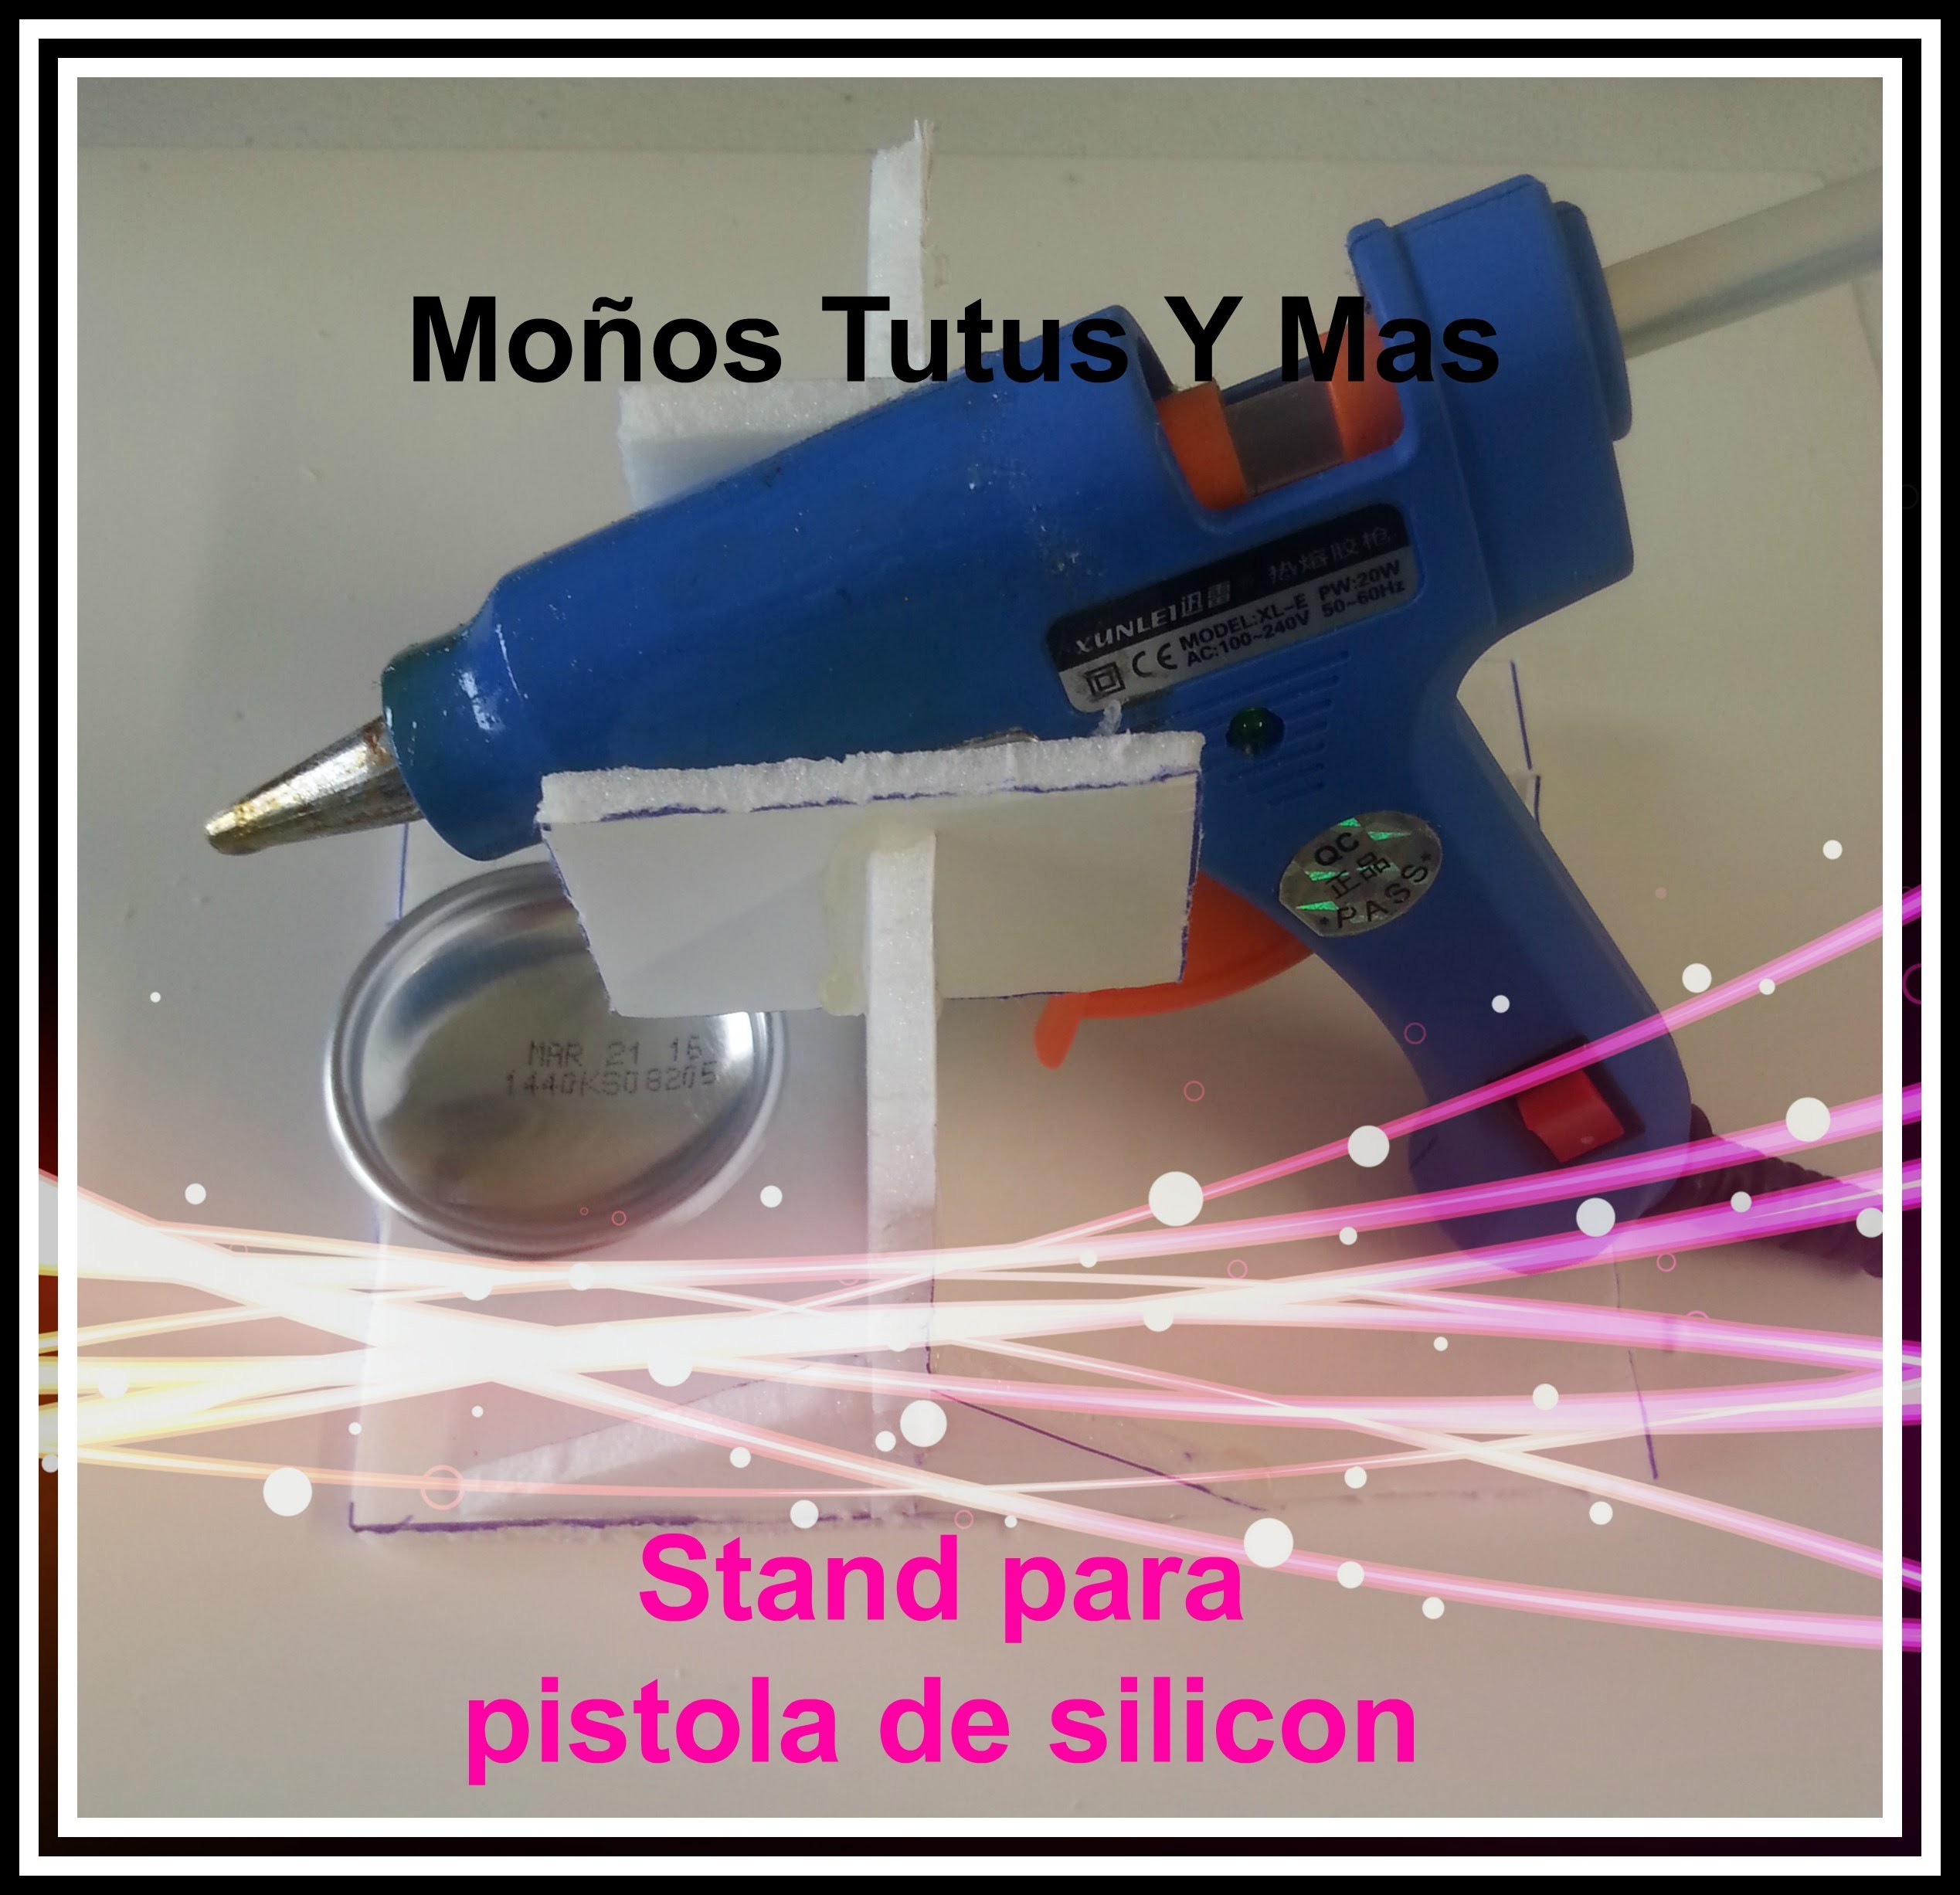 BASE PARA PISTOLA DE SILICON Paso a Paso GLUE GUN STAND Tutorial DIY How To PAP